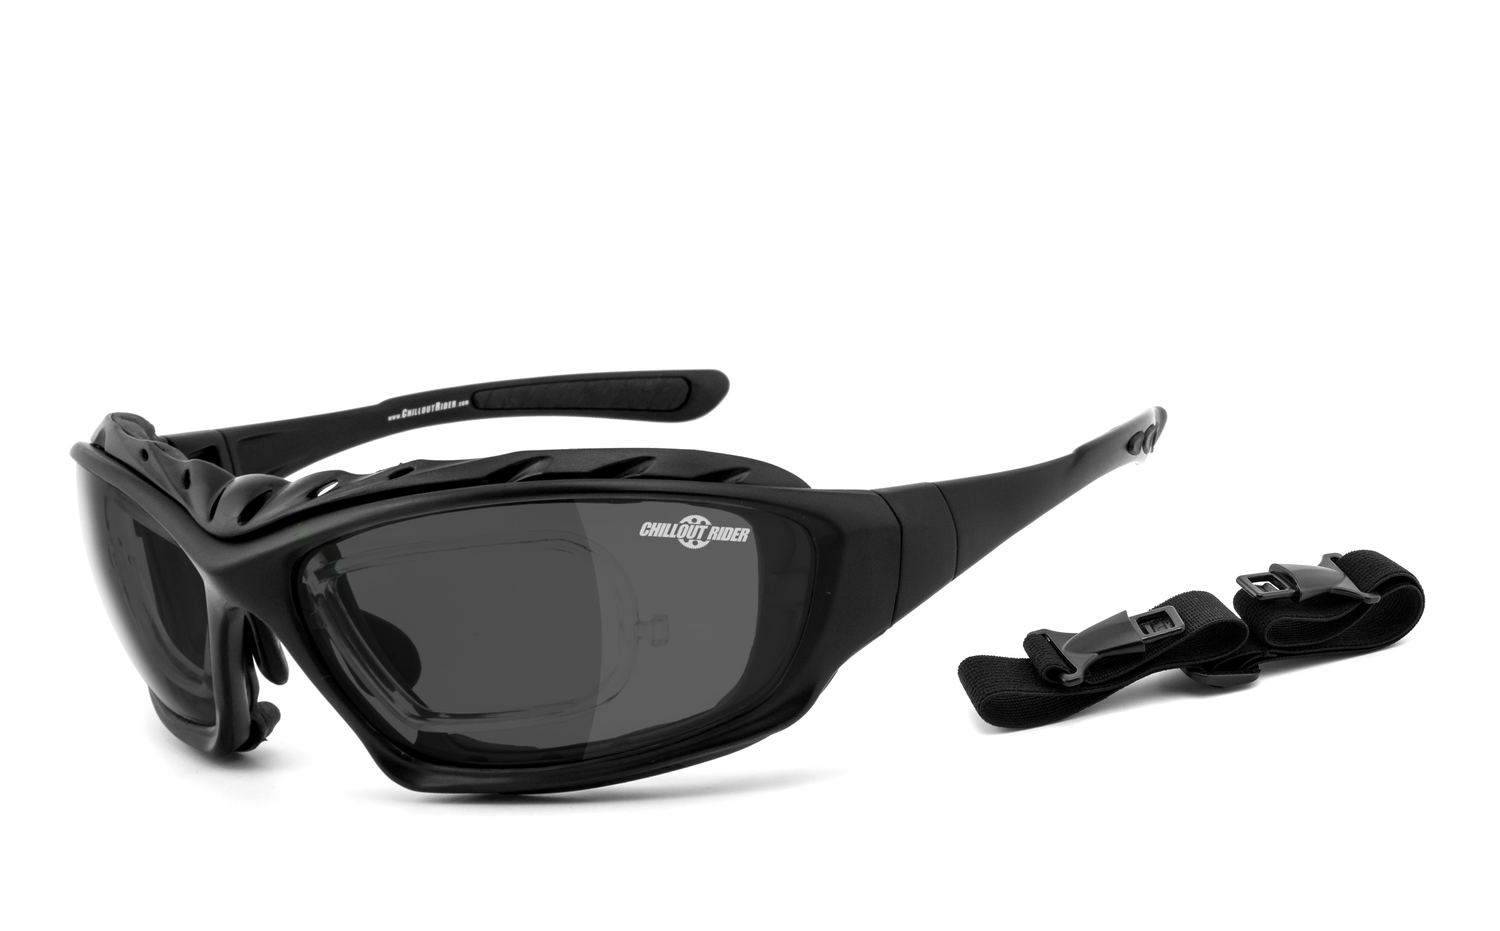 CHILLOUT RIDER | gepolsterte Multifunktionsbrille, Motorradbrille, Motorrad-Sonnenbrille, Bikerbrille, winddicht